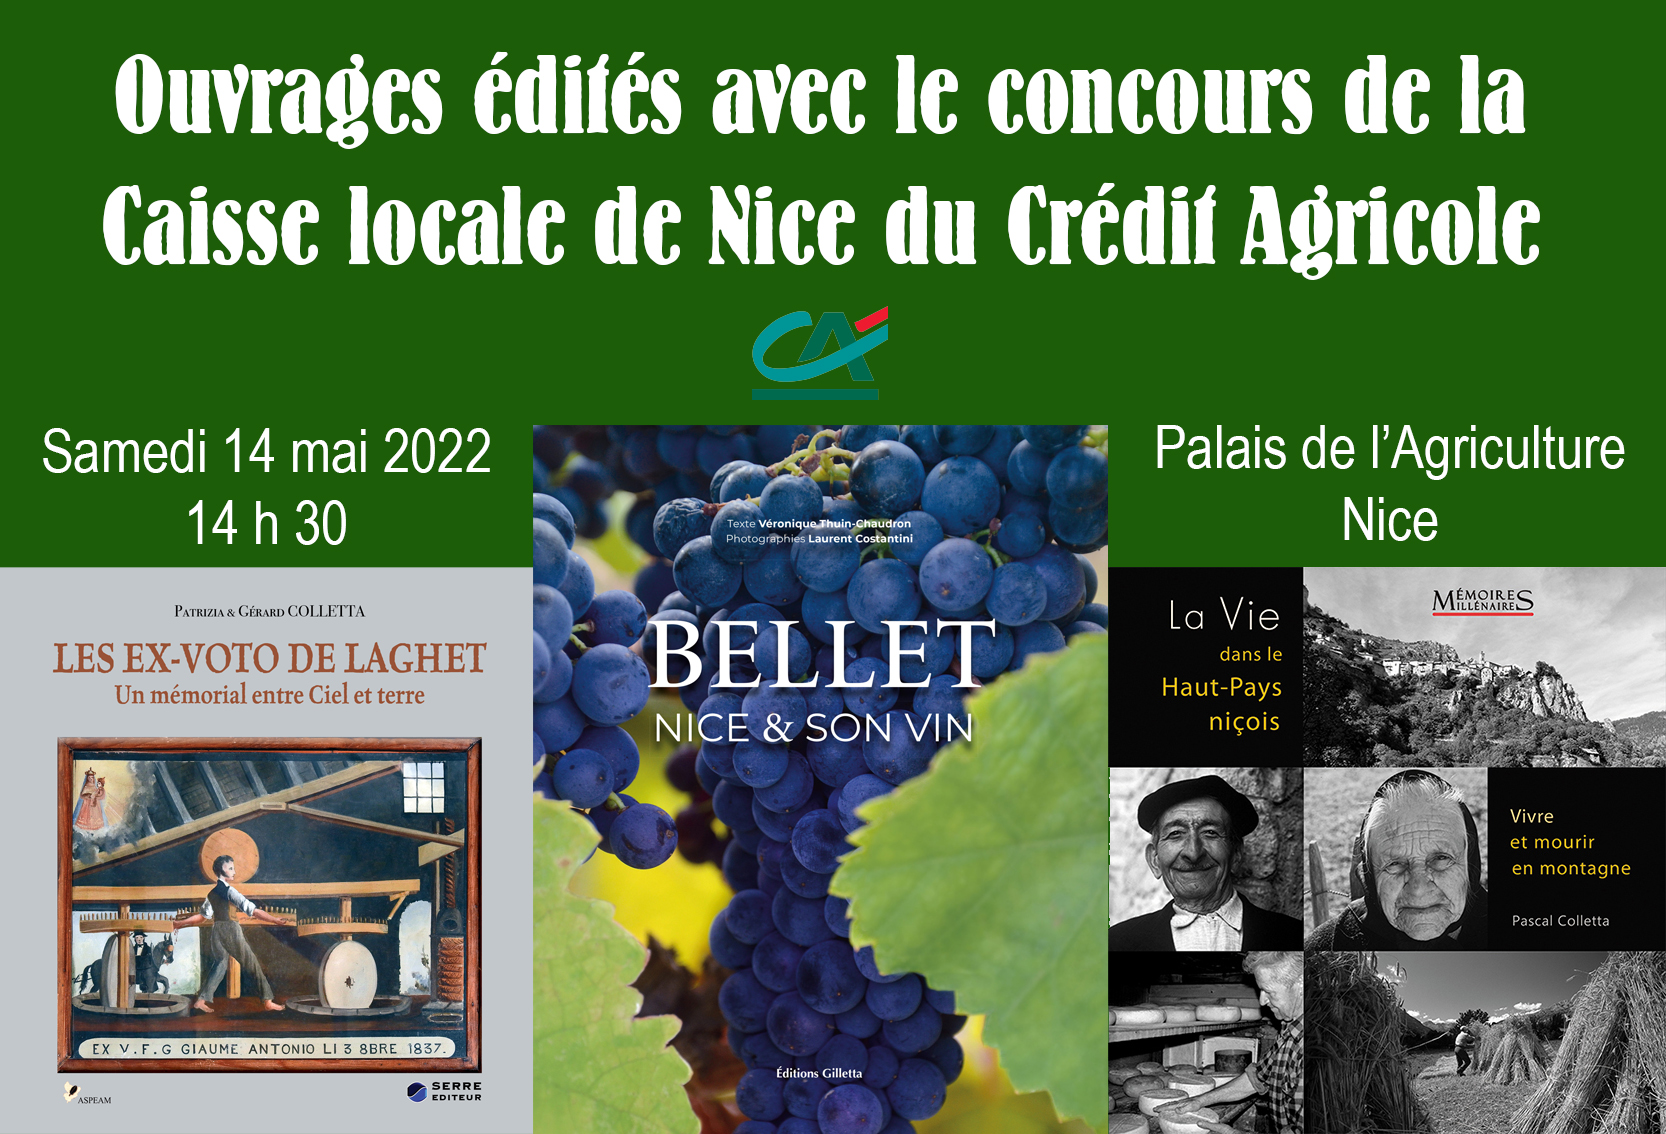 Présentation de livres sur le Comté de Nice au Palais de l'Agriculture à Nice